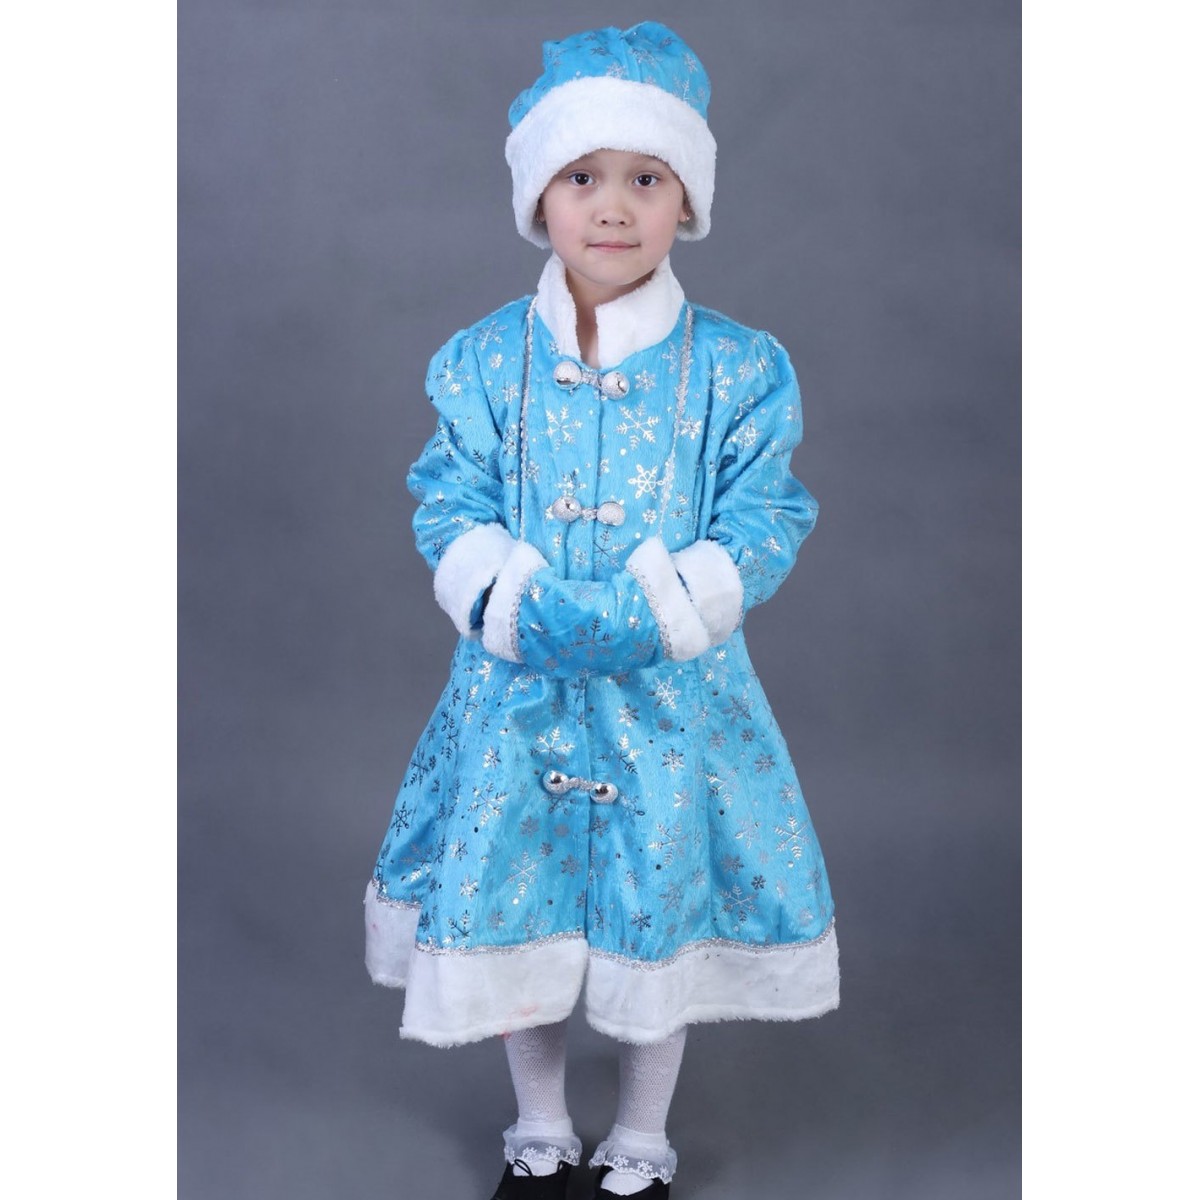 Купить новогодний костюм Снегурочки для девочки в интернет-магазине